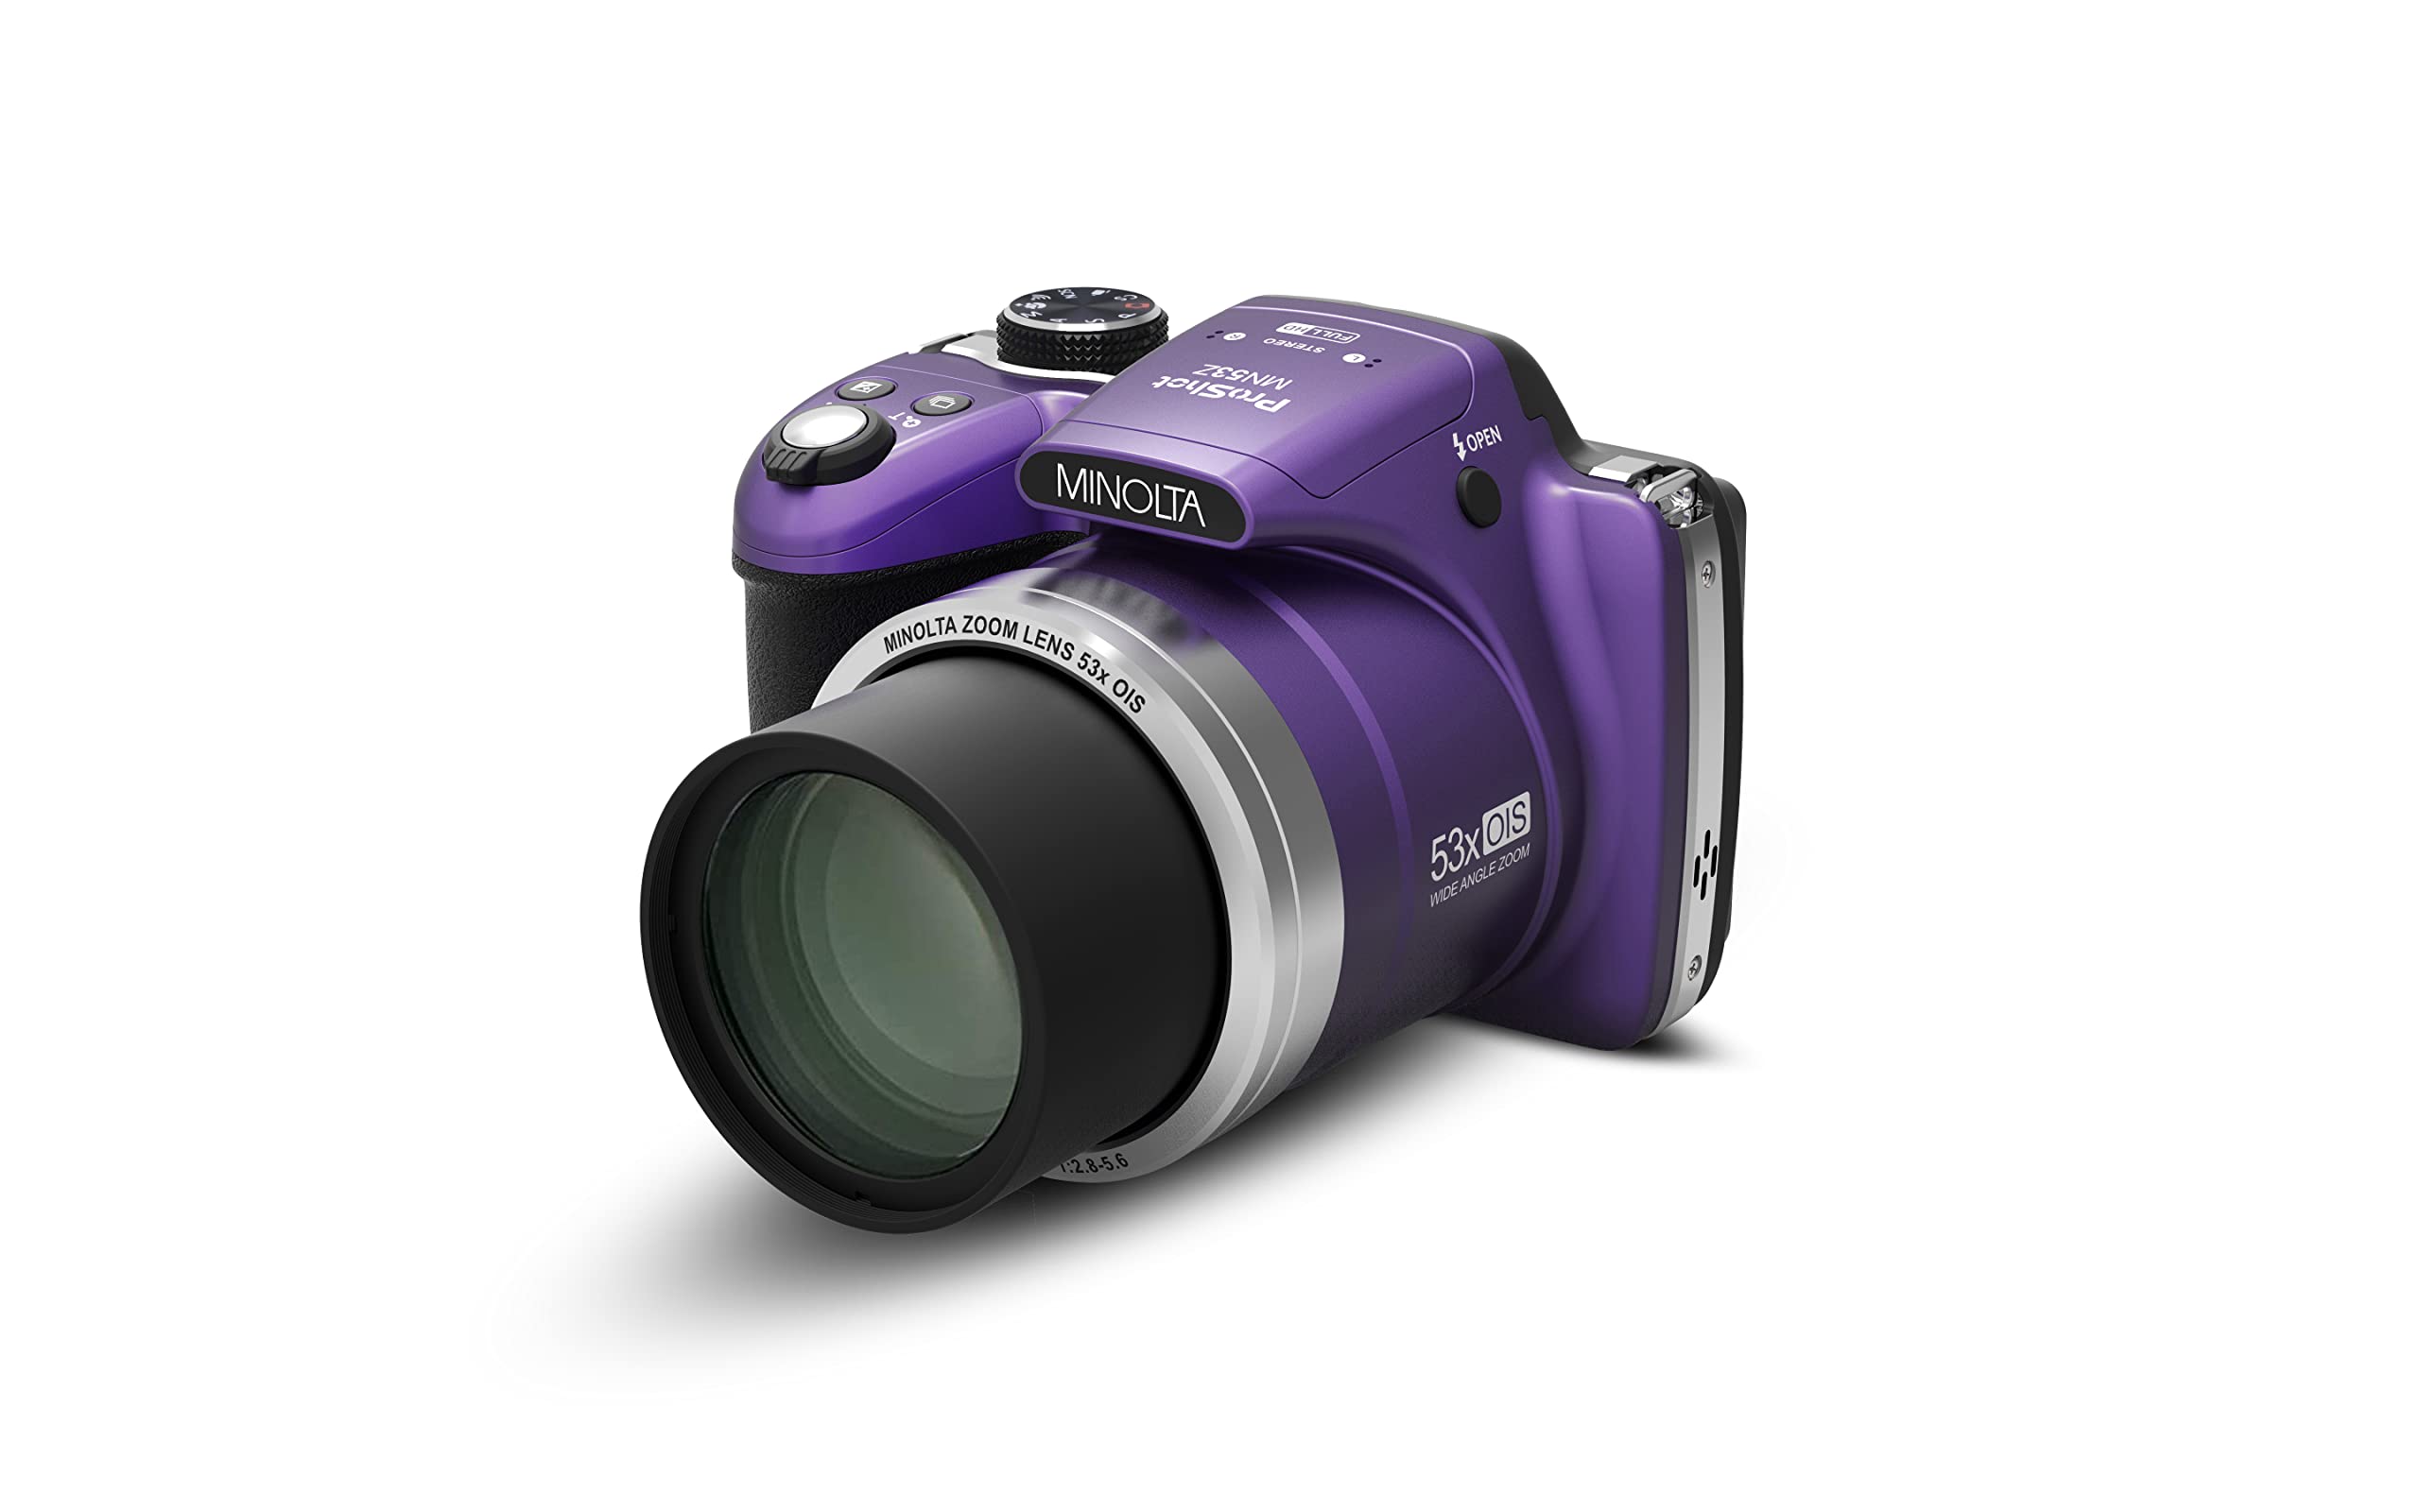 Minolta Pro Shot 16 Mega Pixel HD Digital Camera with 53x Optical Zoom, Full 1080p HD Video & 16GB SD Card, MN53Z, Purple